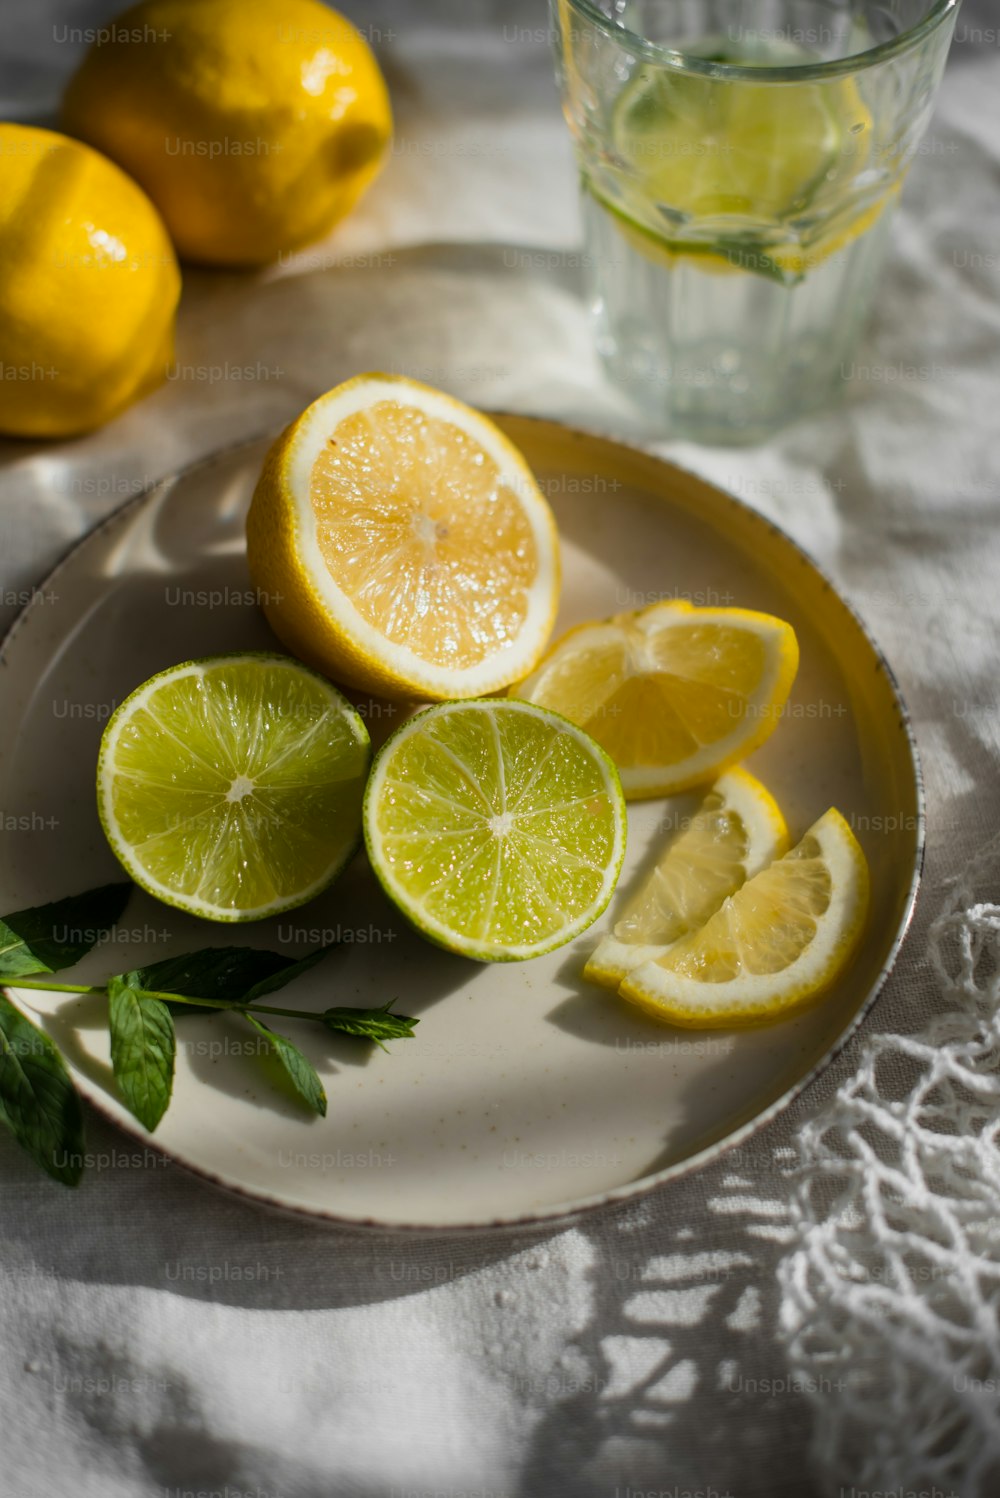 un plato de limones y un vaso de agua